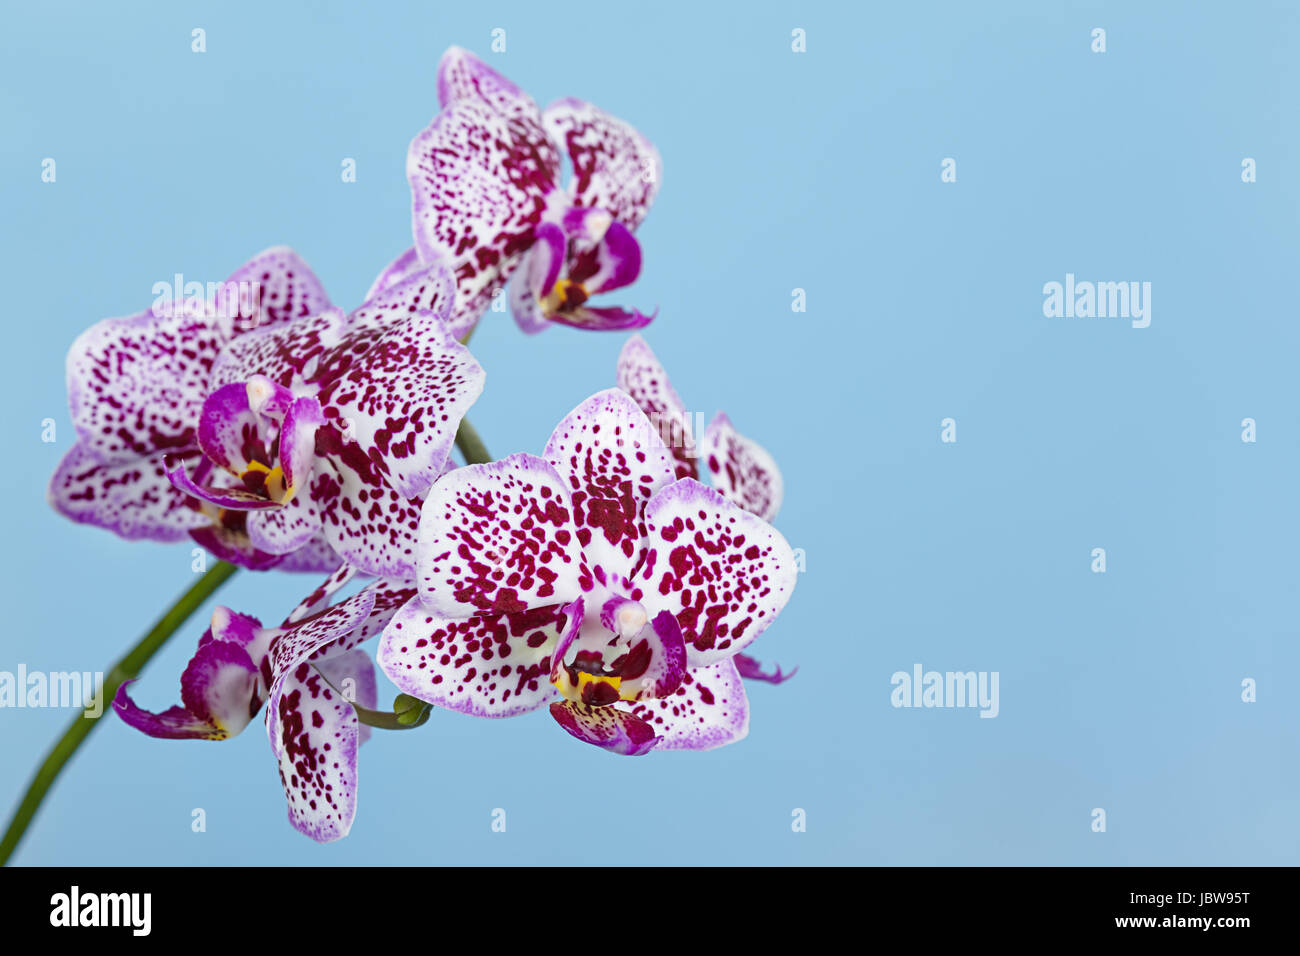 La succursale d'une orchidée bigarrée sur fond bleu Banque D'Images